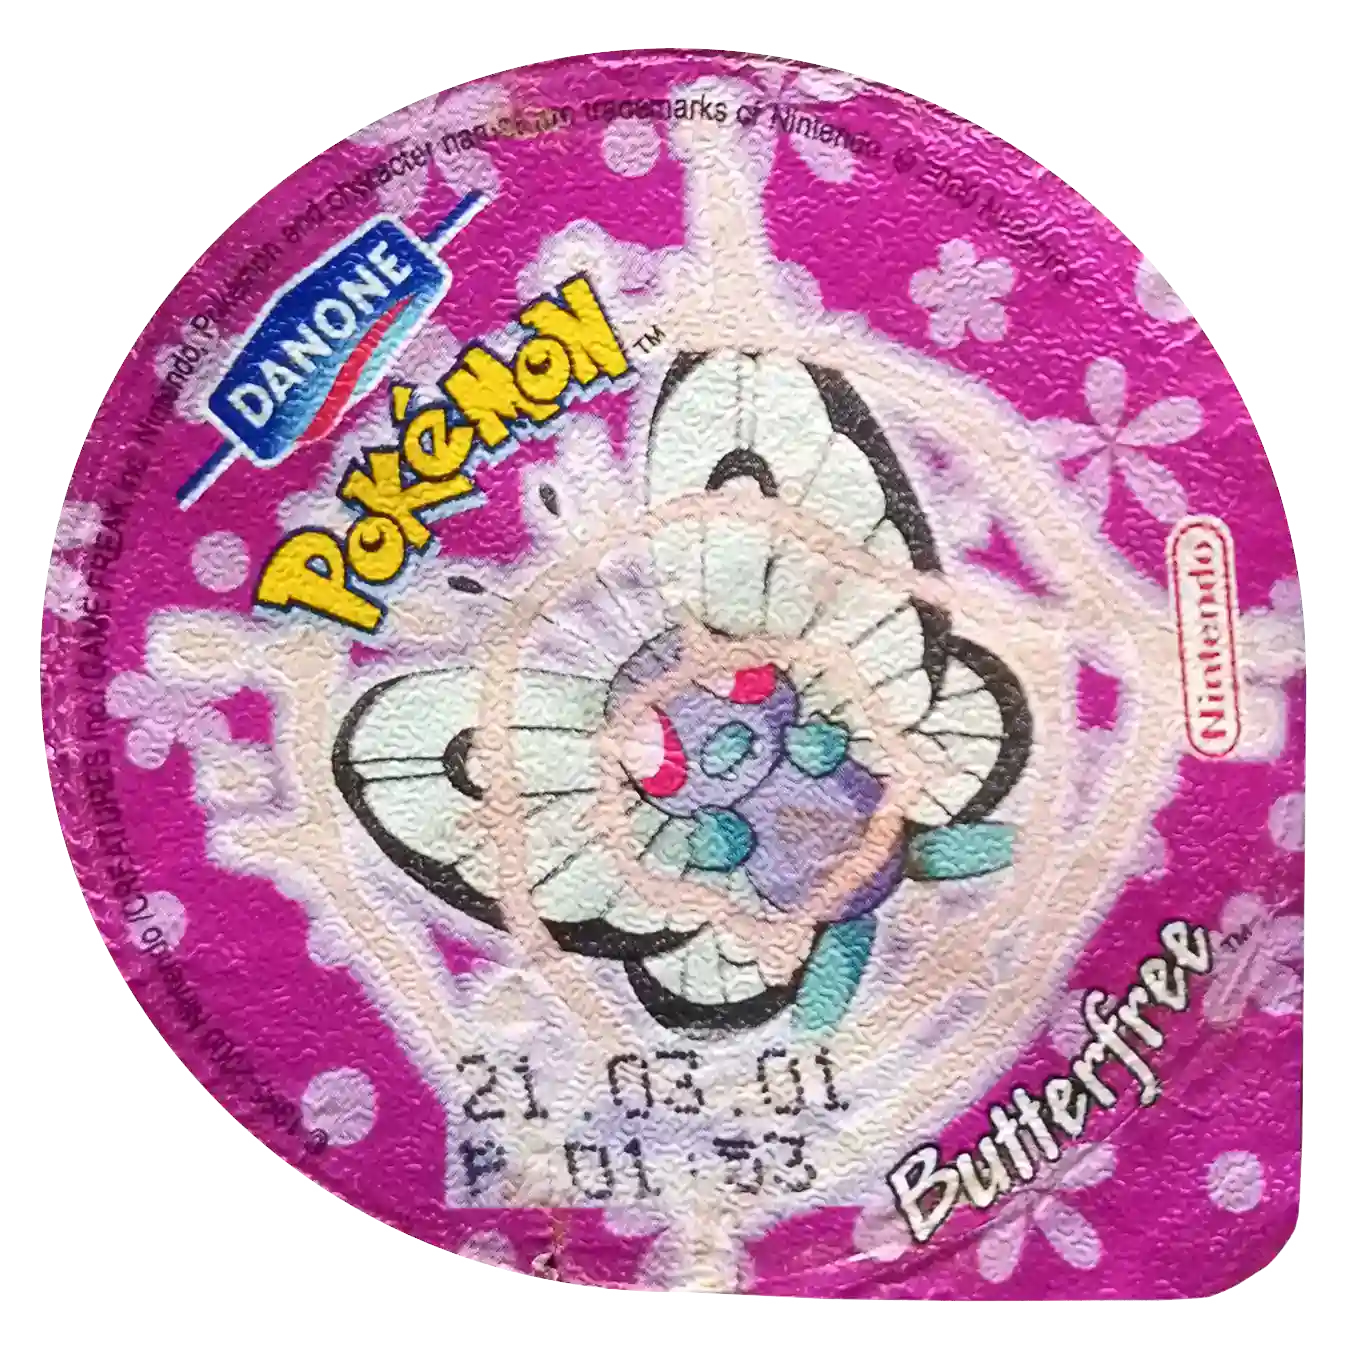 wieczka pokemon danone kolekcja butterfree uzywa confusion pokepolis zbiór pokemon tazo